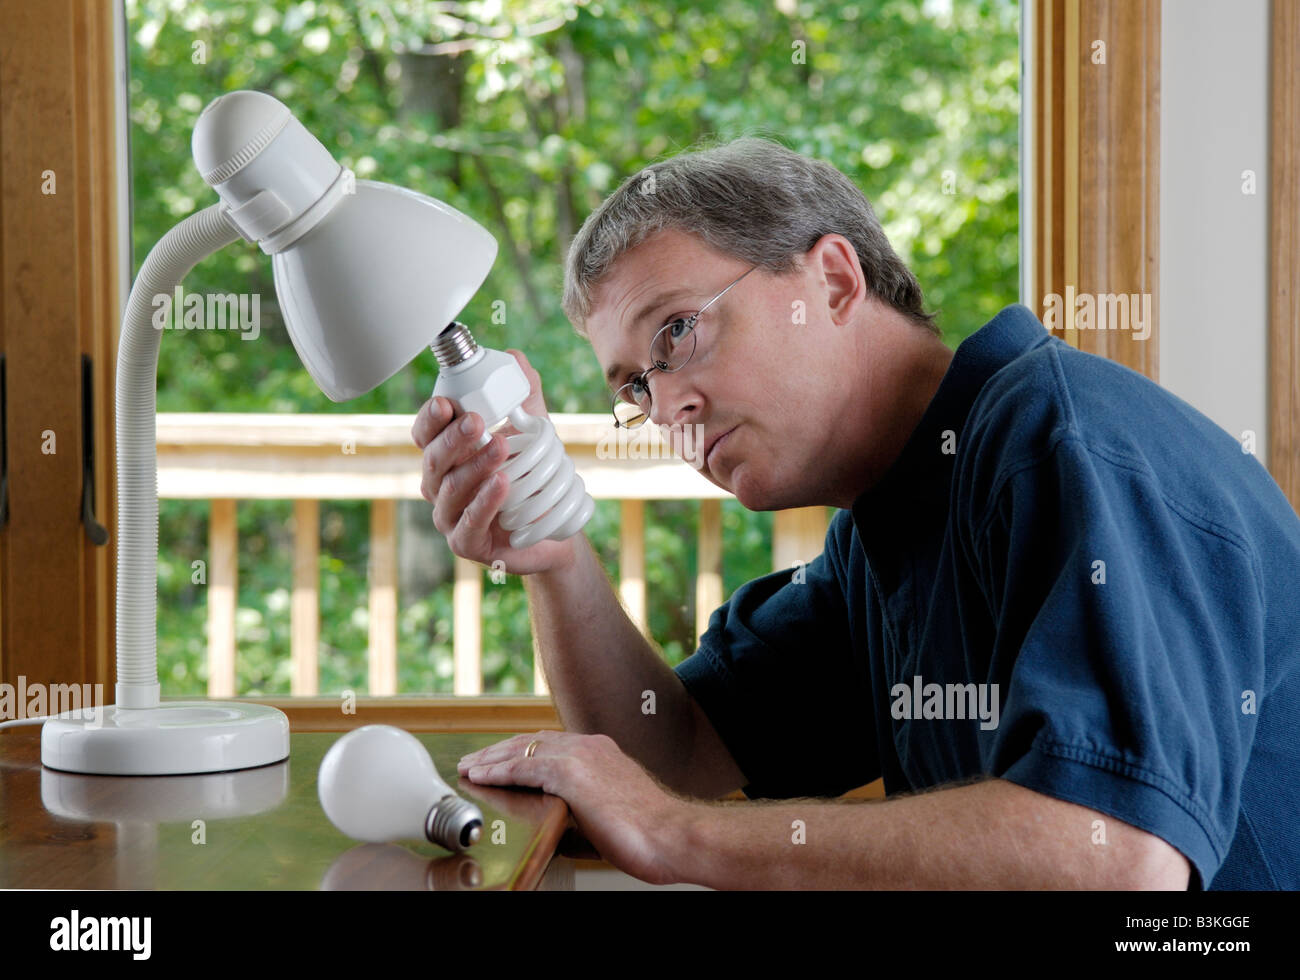 Un homme de 45 ans remplace une ampoule à incandescence à la personne avec une ampoule fluorescente compacte à économie d'énergie Banque D'Images